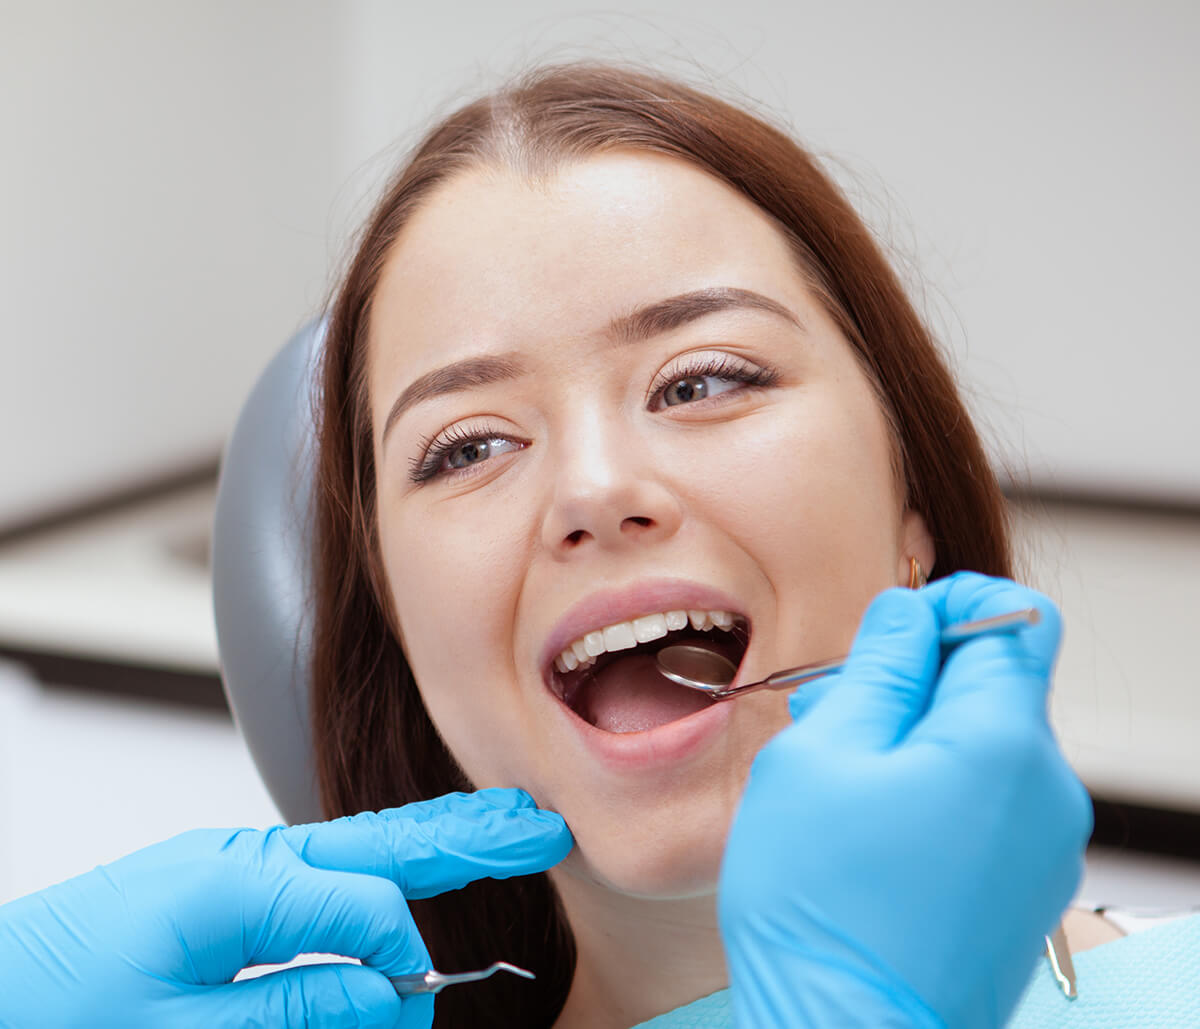 Gum Disease Treatment Process in Kirkland WA Area